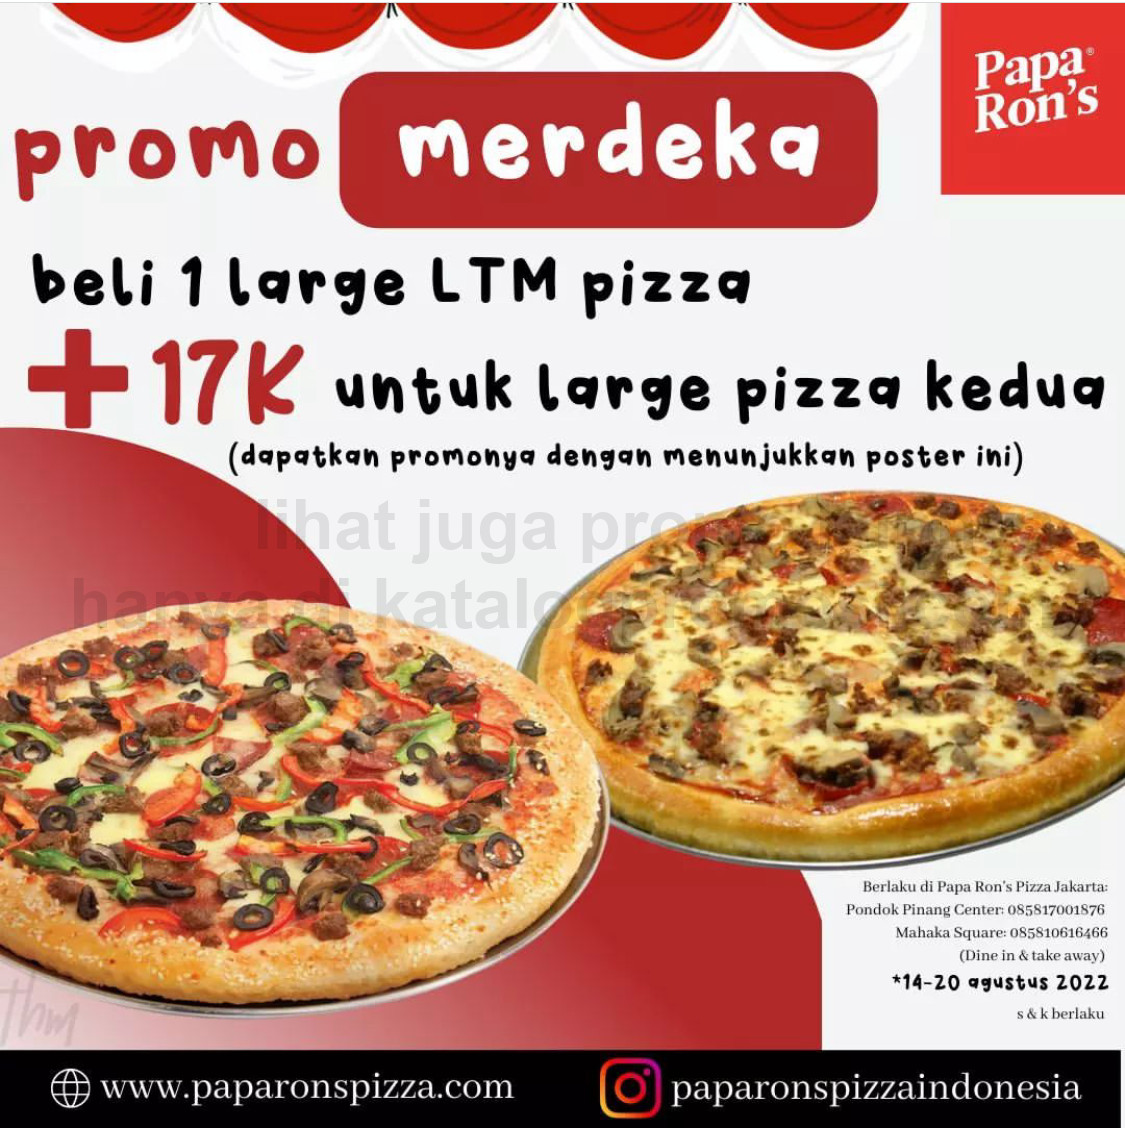 Promo PAPA RON'S PIZZA Paket Merdeka ! Large Pizza ke dua cuma Tambah Rp. 17.000